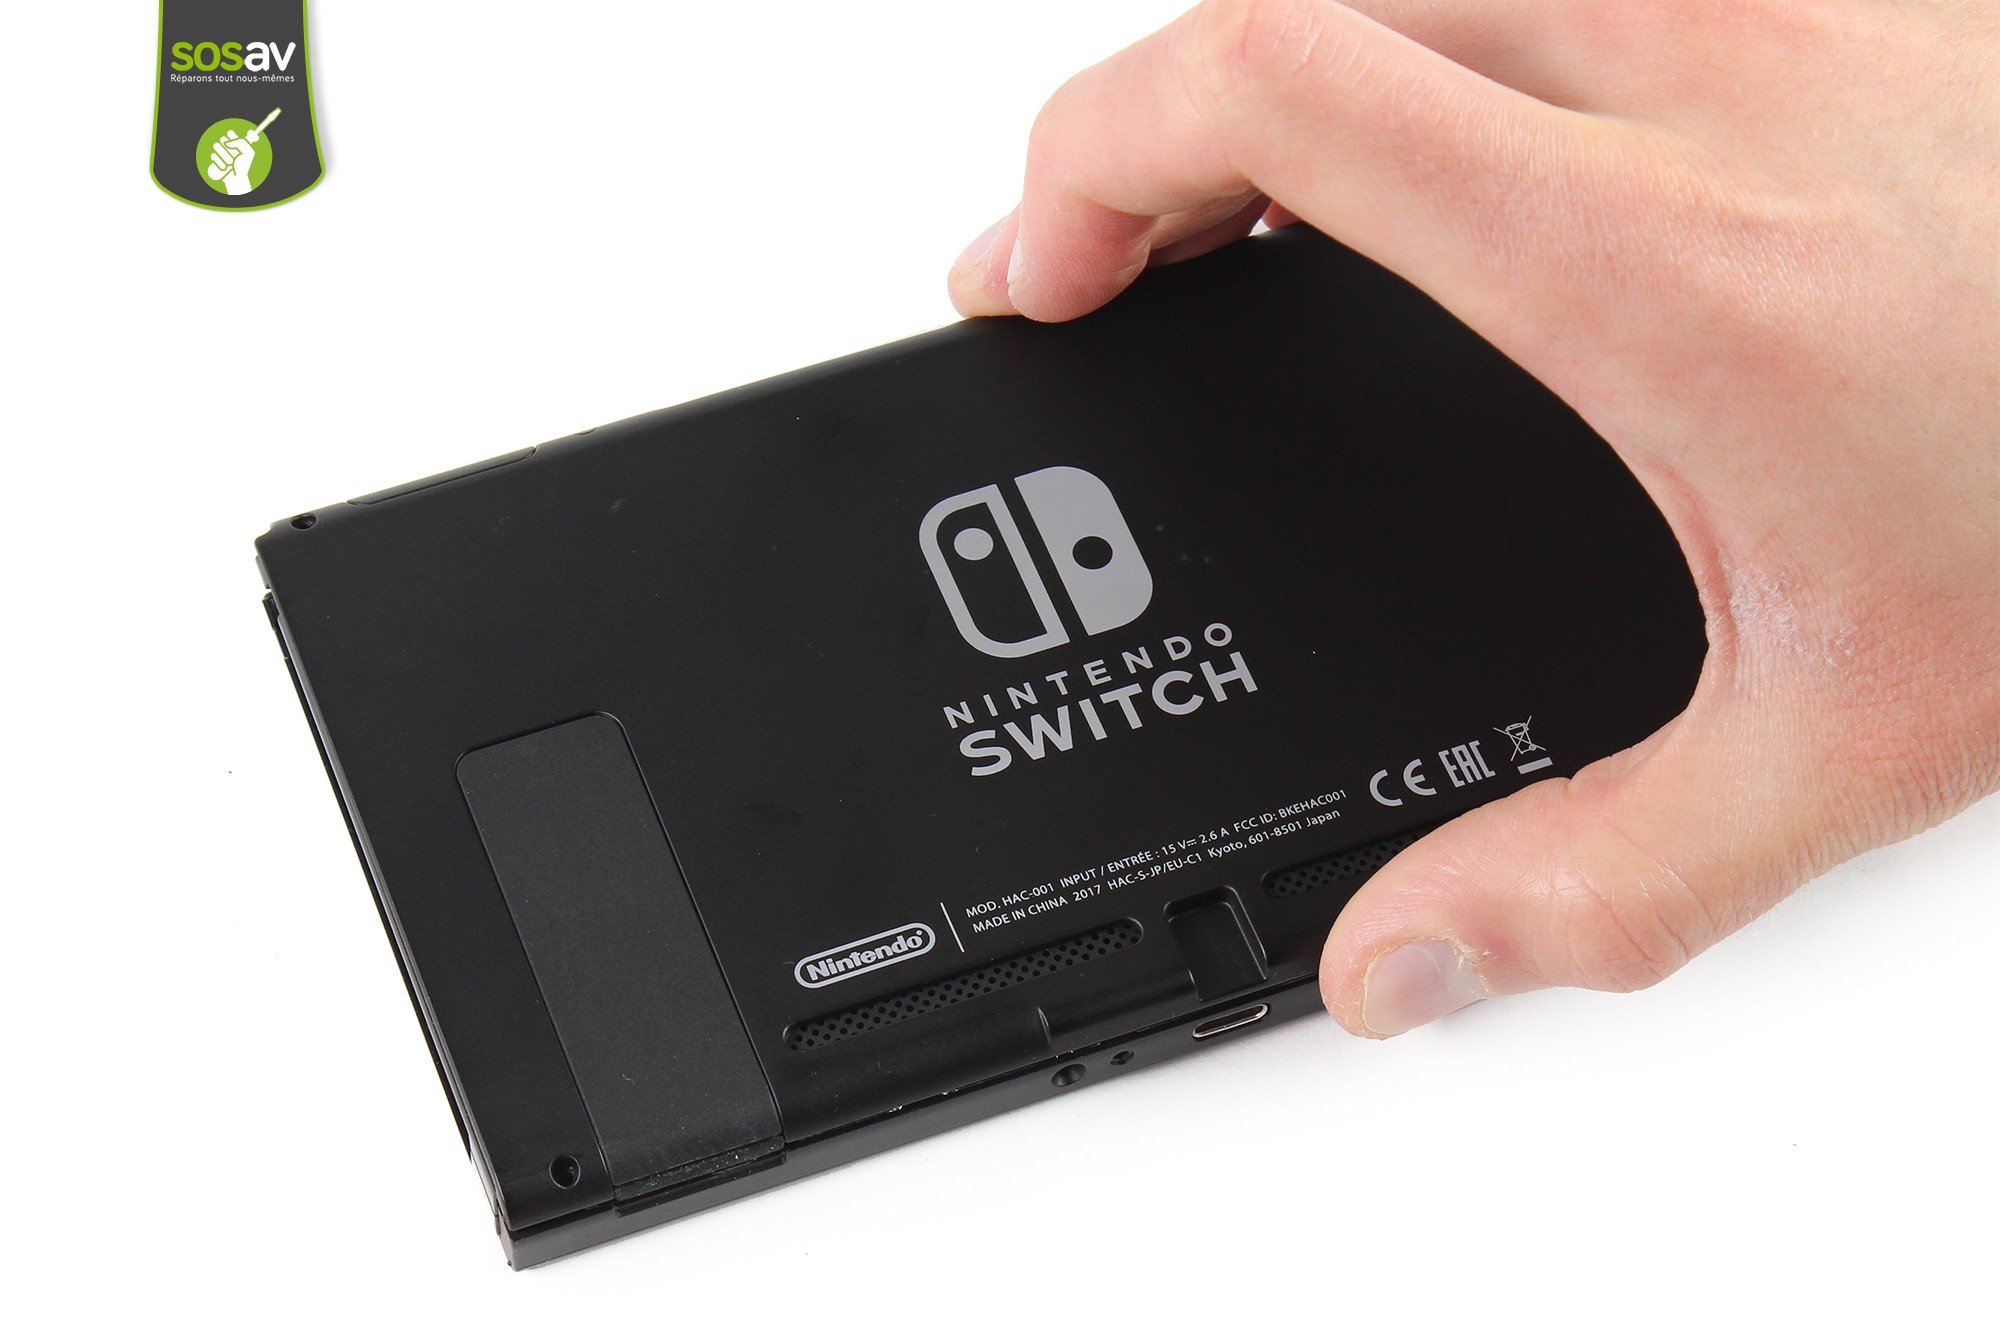 Réparation Lecteur MicroSD Nintendo Switch - Guide gratuit 